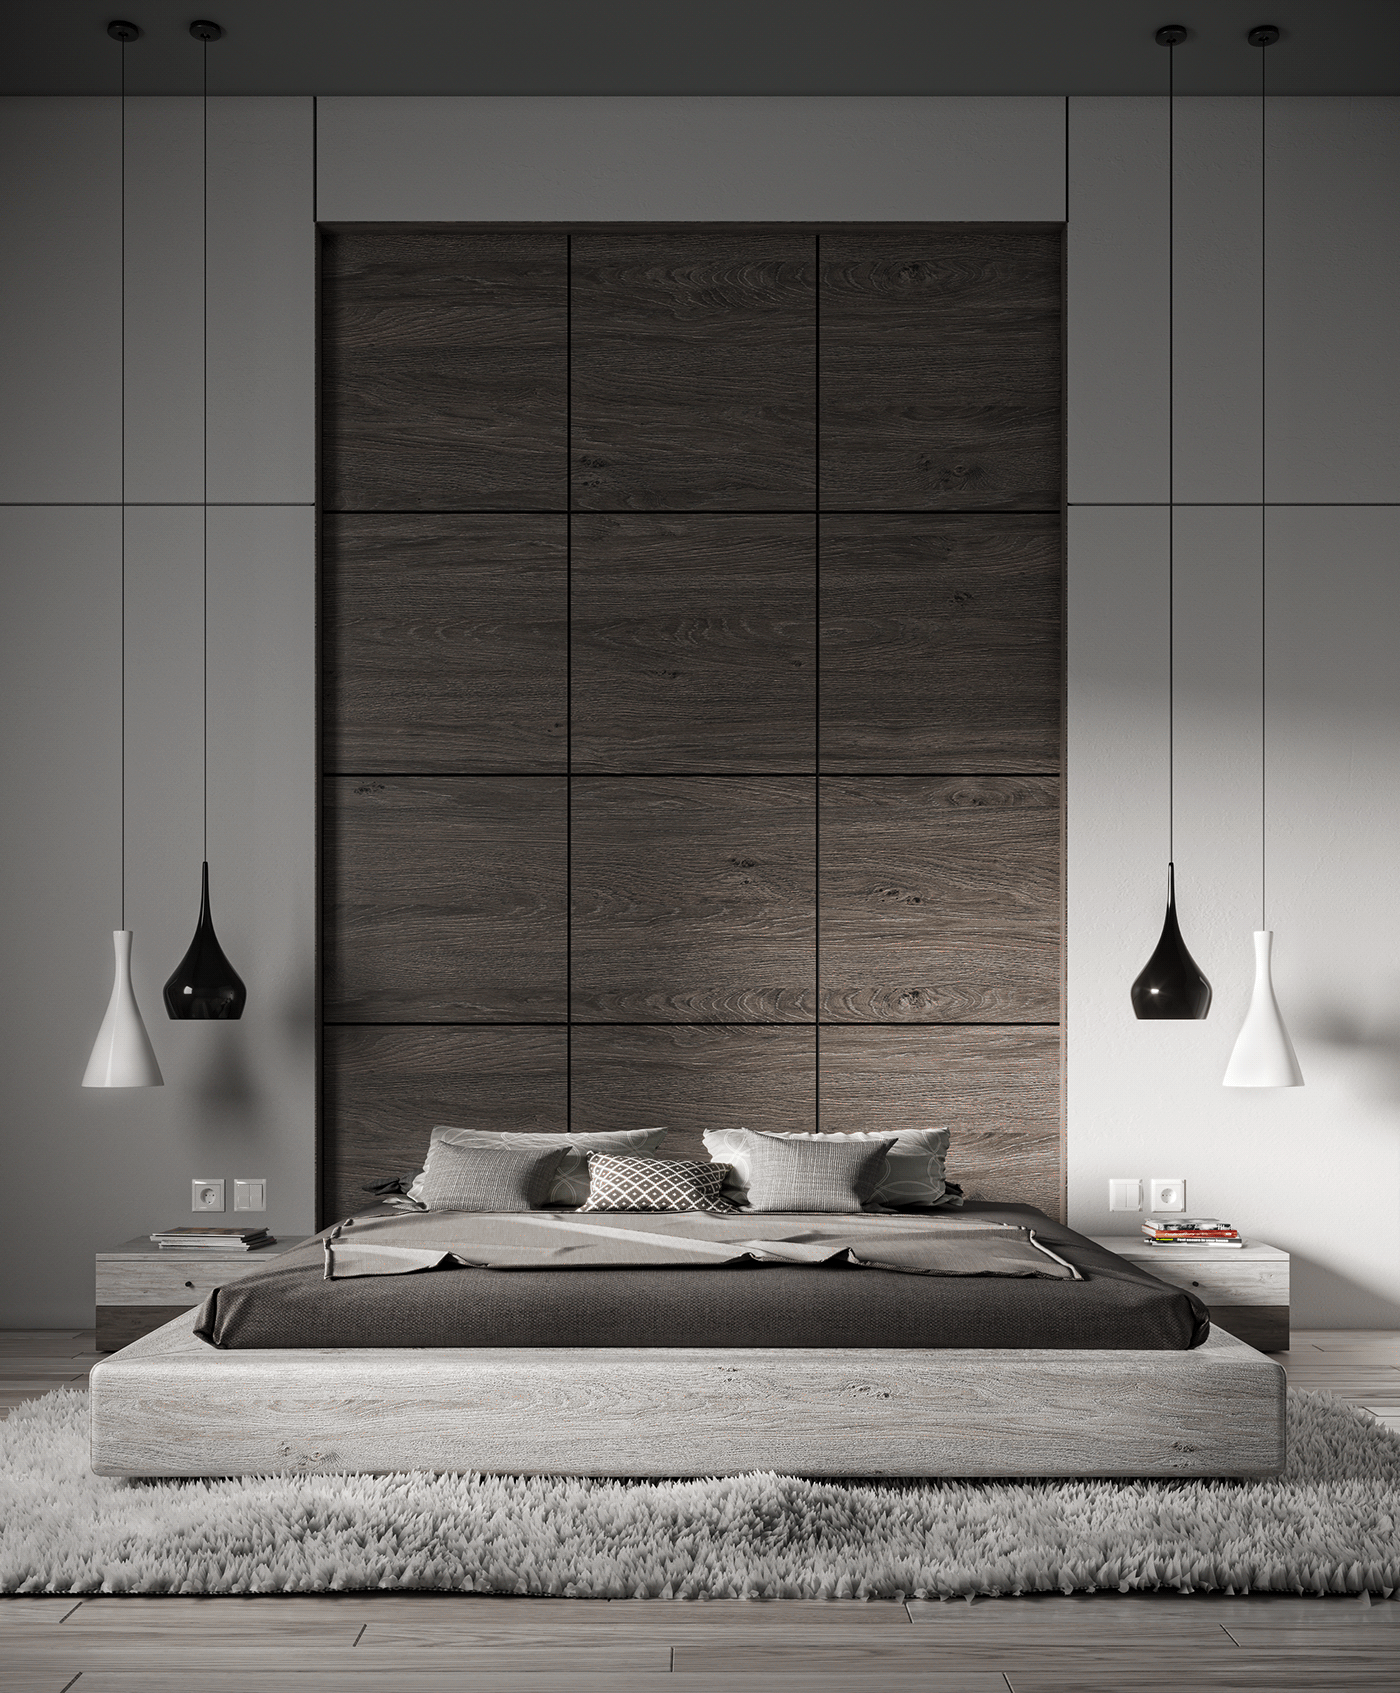 3D 3ds max architecture bedroom design corona Interior interior design  Render visualization